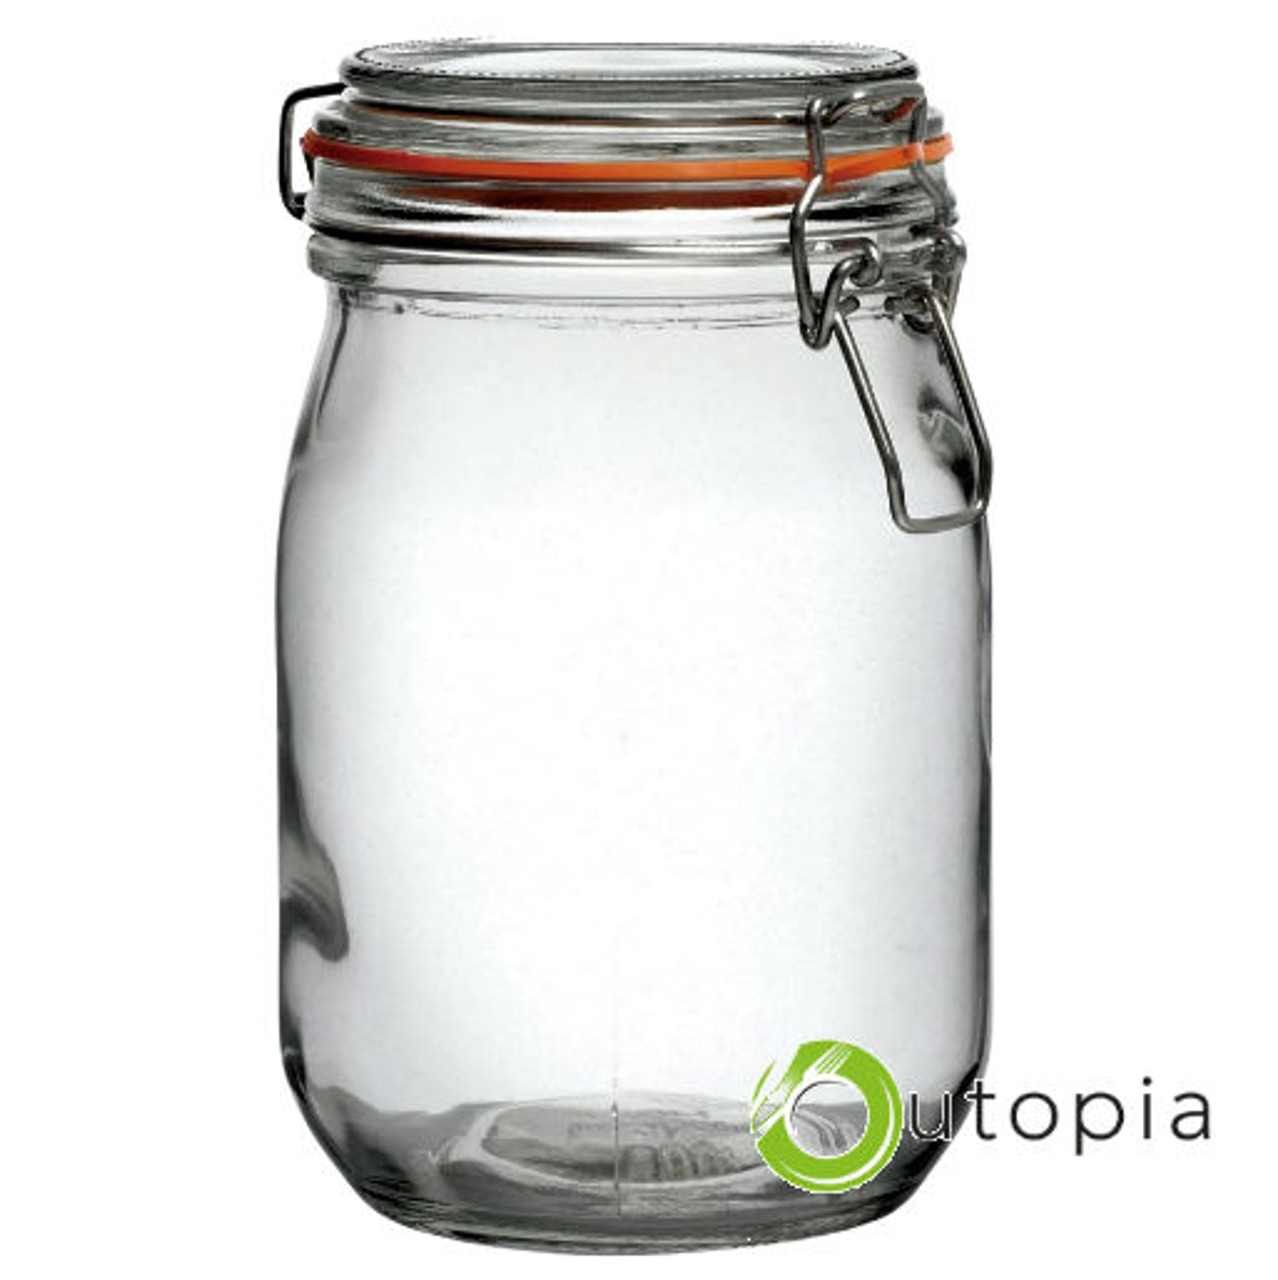 UTOPIA Preserving Jar 1L with Hermetic Closure,